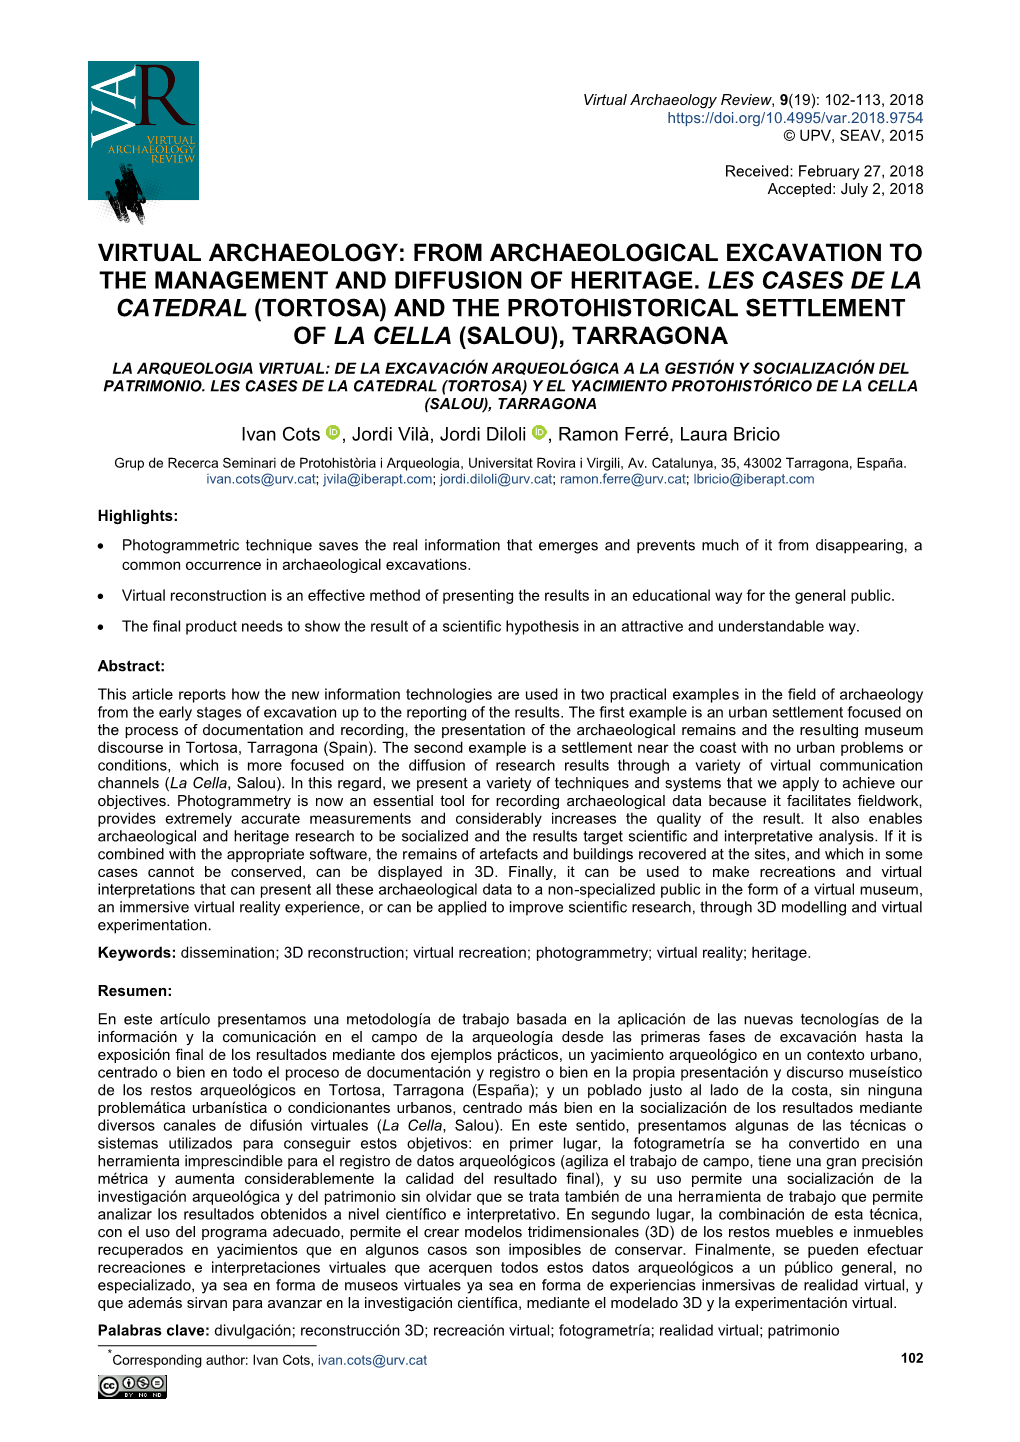 Virtual Archaeology Review, 9(19): 102-113, 2018 © UPV, SEAV, 2015